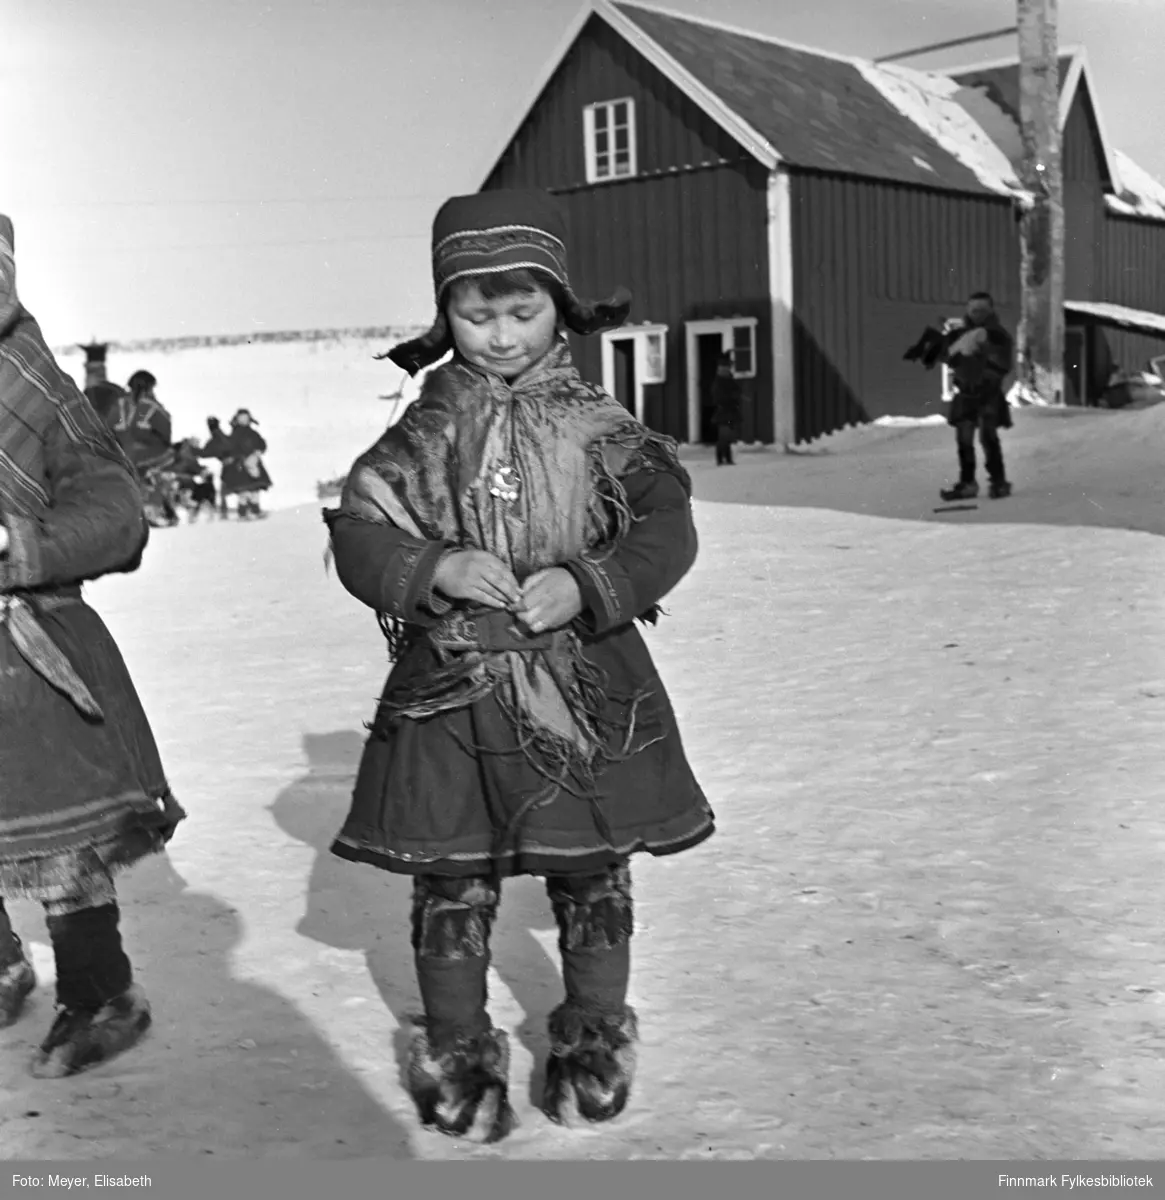 Berit Nilsdatter Logje på plassen utenfor Kautokeino Skoleinternat. Berit har på seg samisk kofte, sjal, sølje, lue, skinnbukser og skaller med skalleband. Det er stor aktivitet på plassen, barn i lek og voksne i arbeid. Sannsynligvis fotografert ved påsketider 1940.